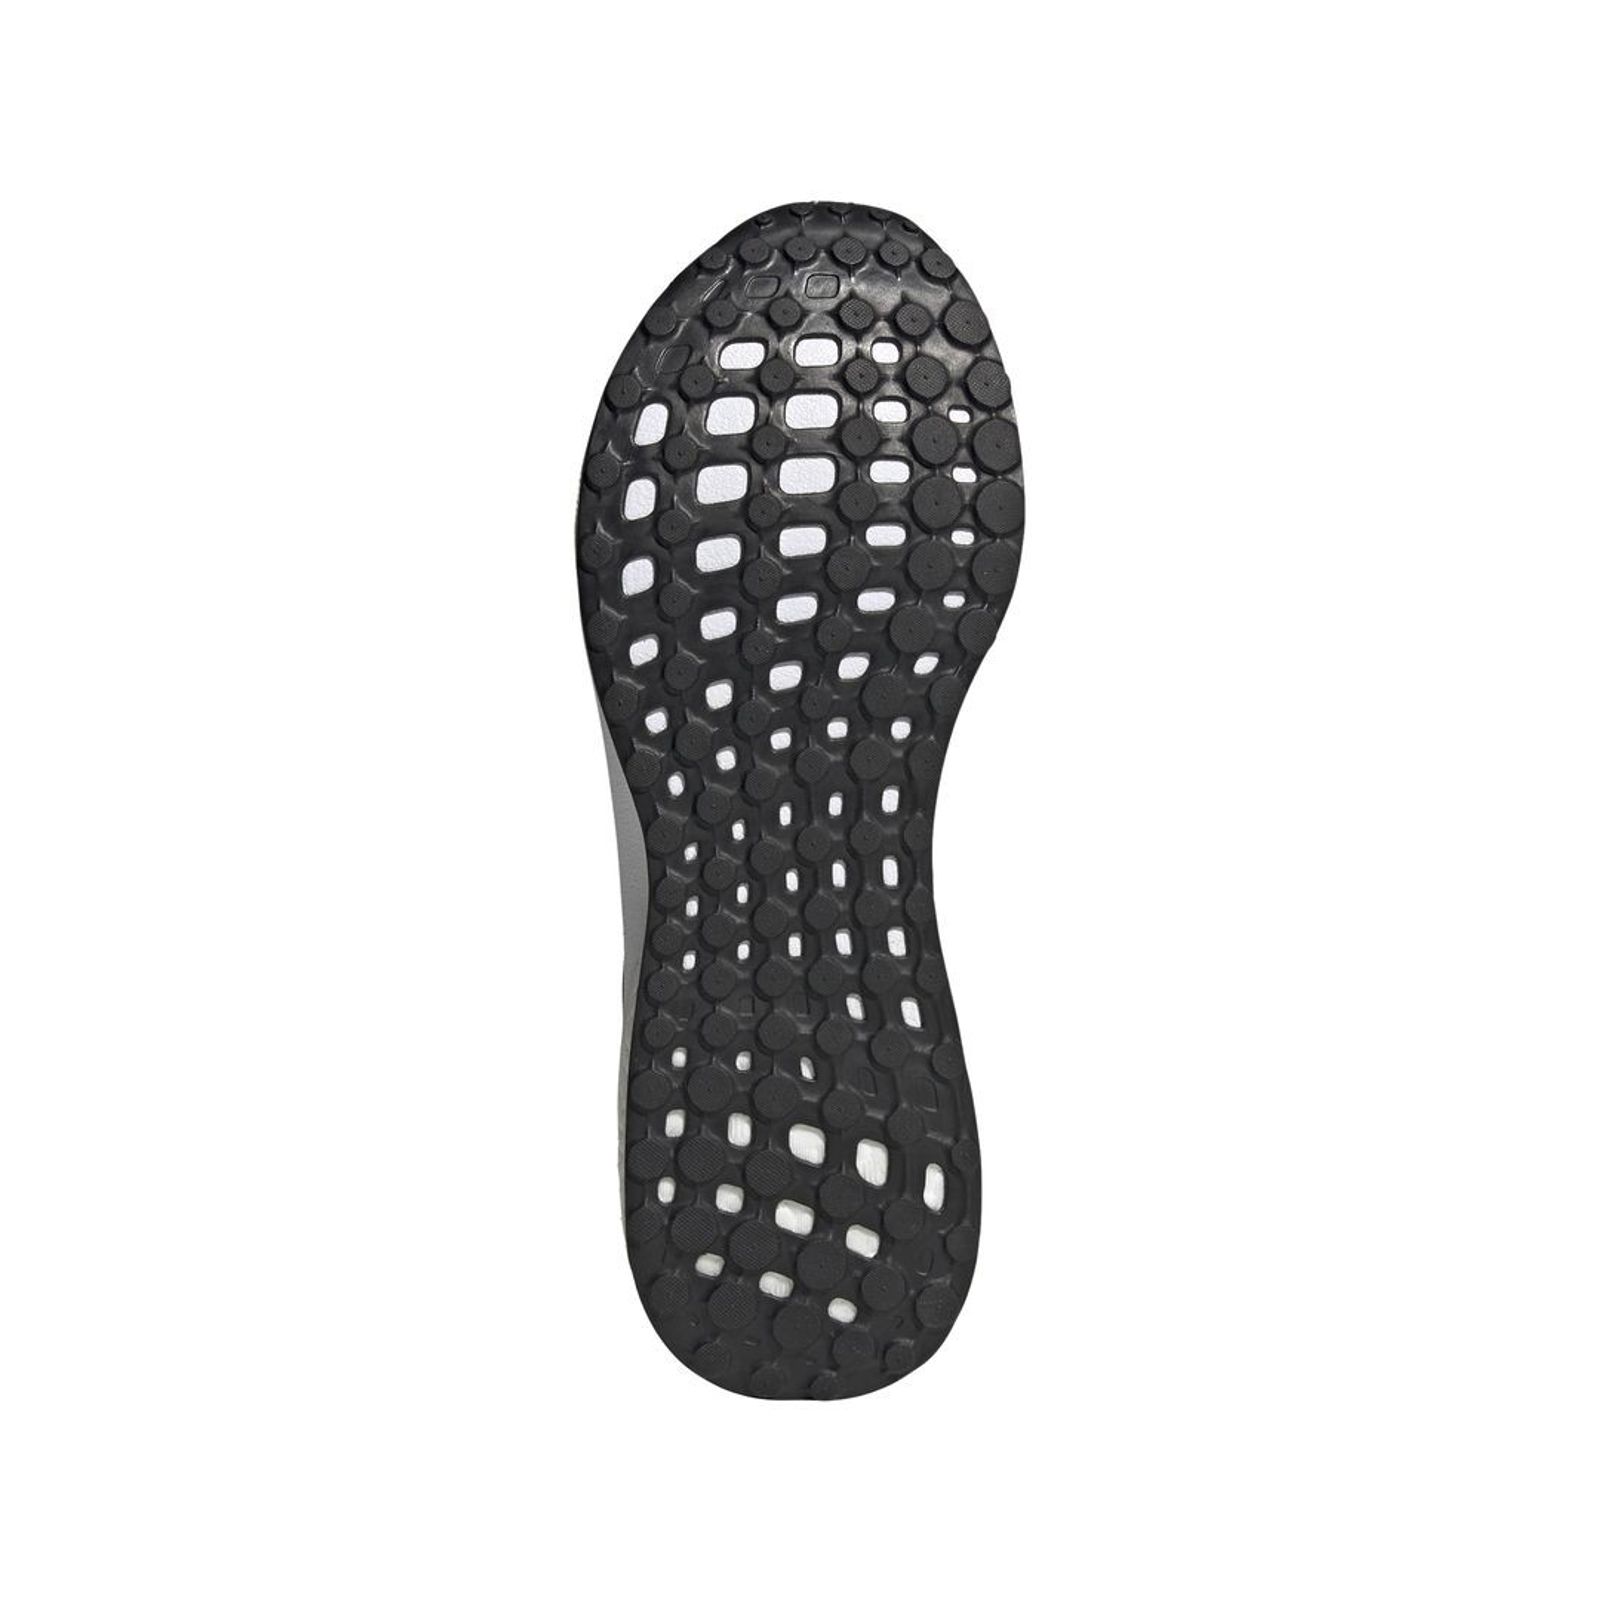 Schuh von Adidas, 10½